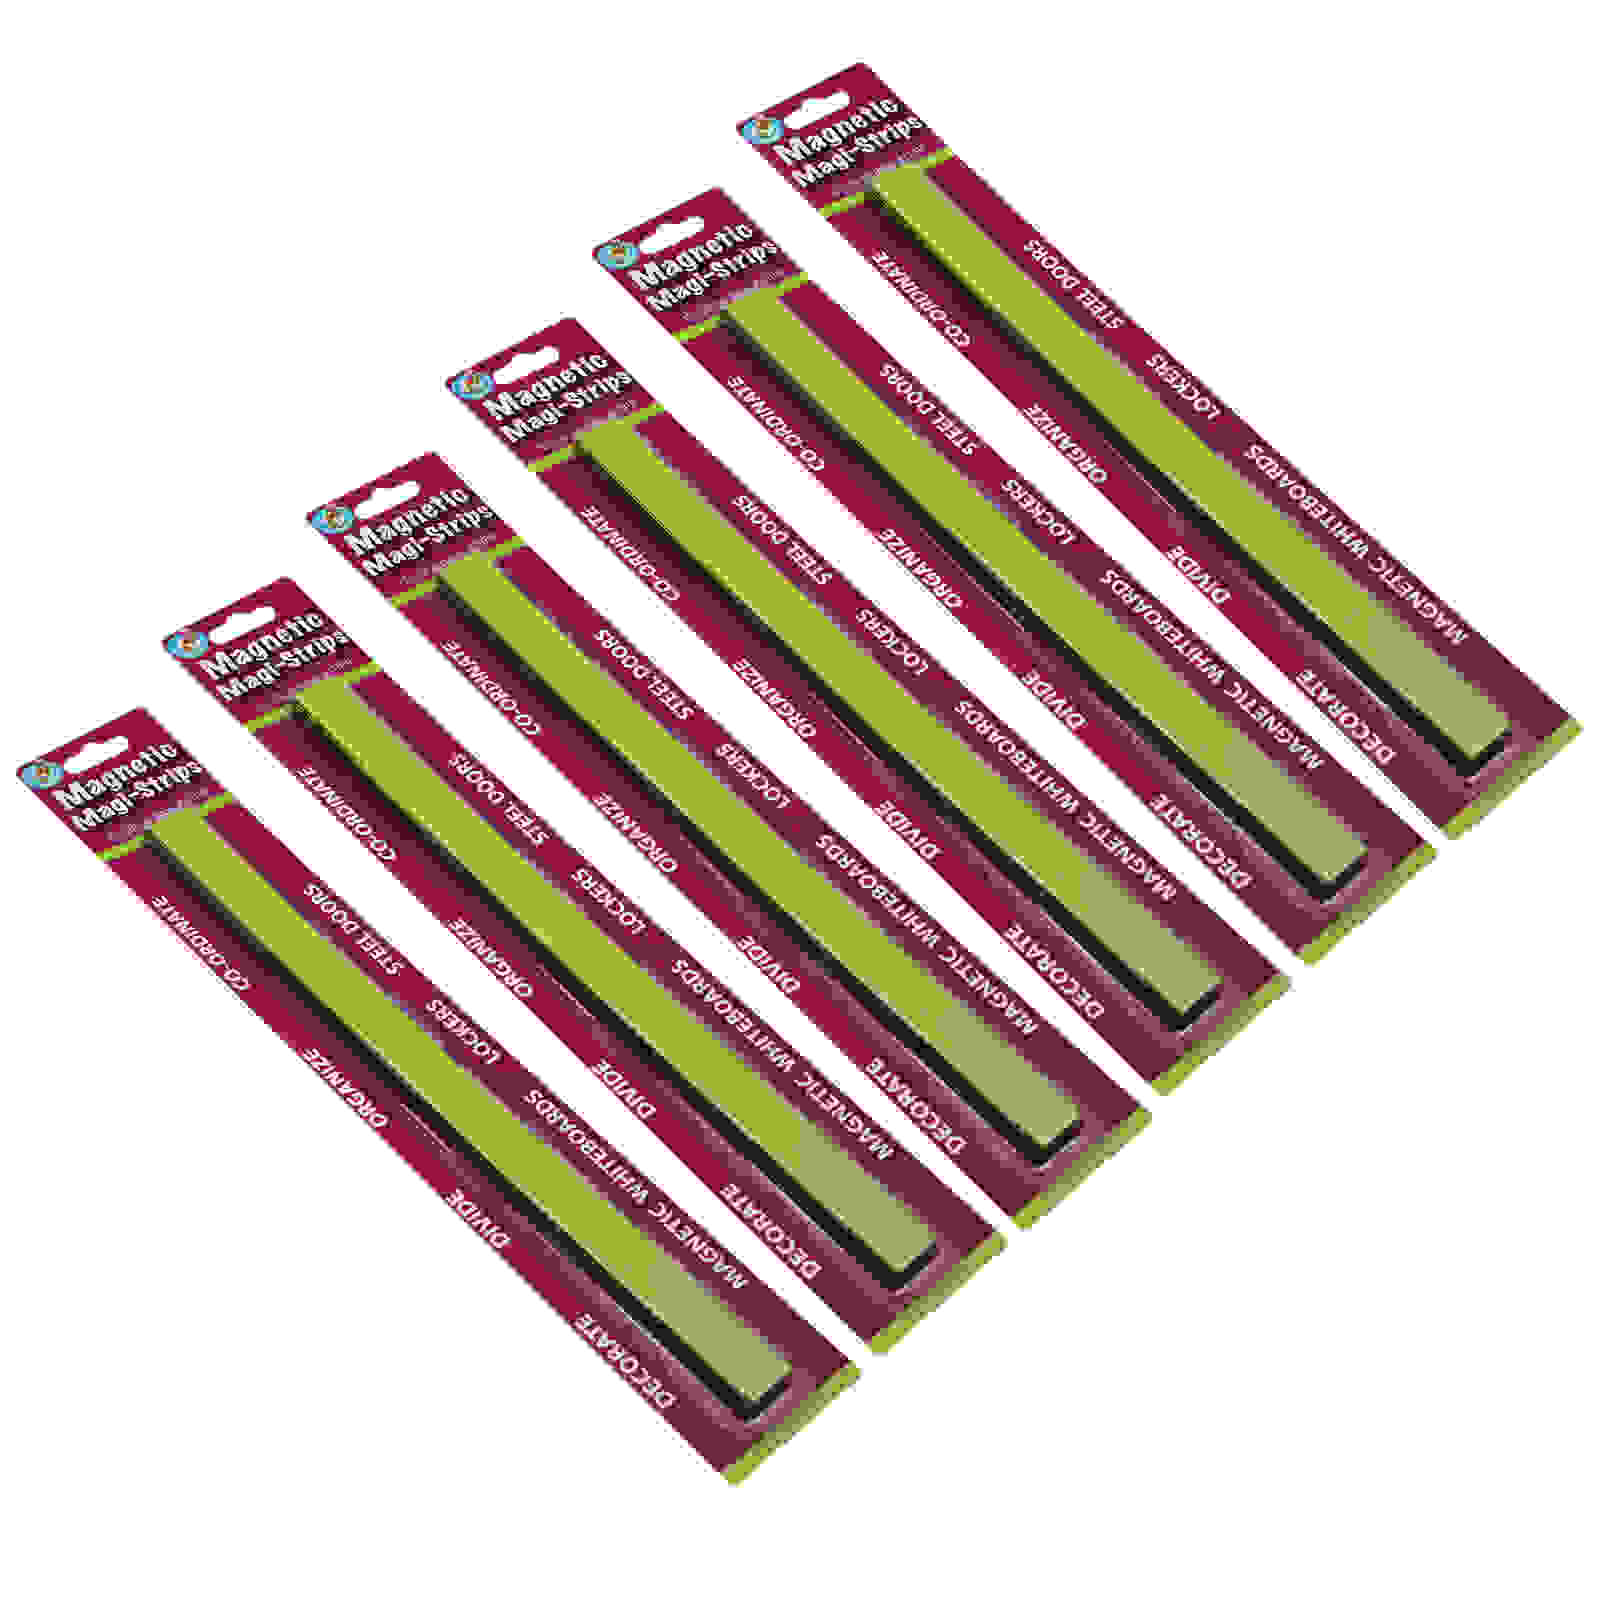 Magnetic Magi-Strips, Lime Green, 12 Feet Per Pack, 6 Packs